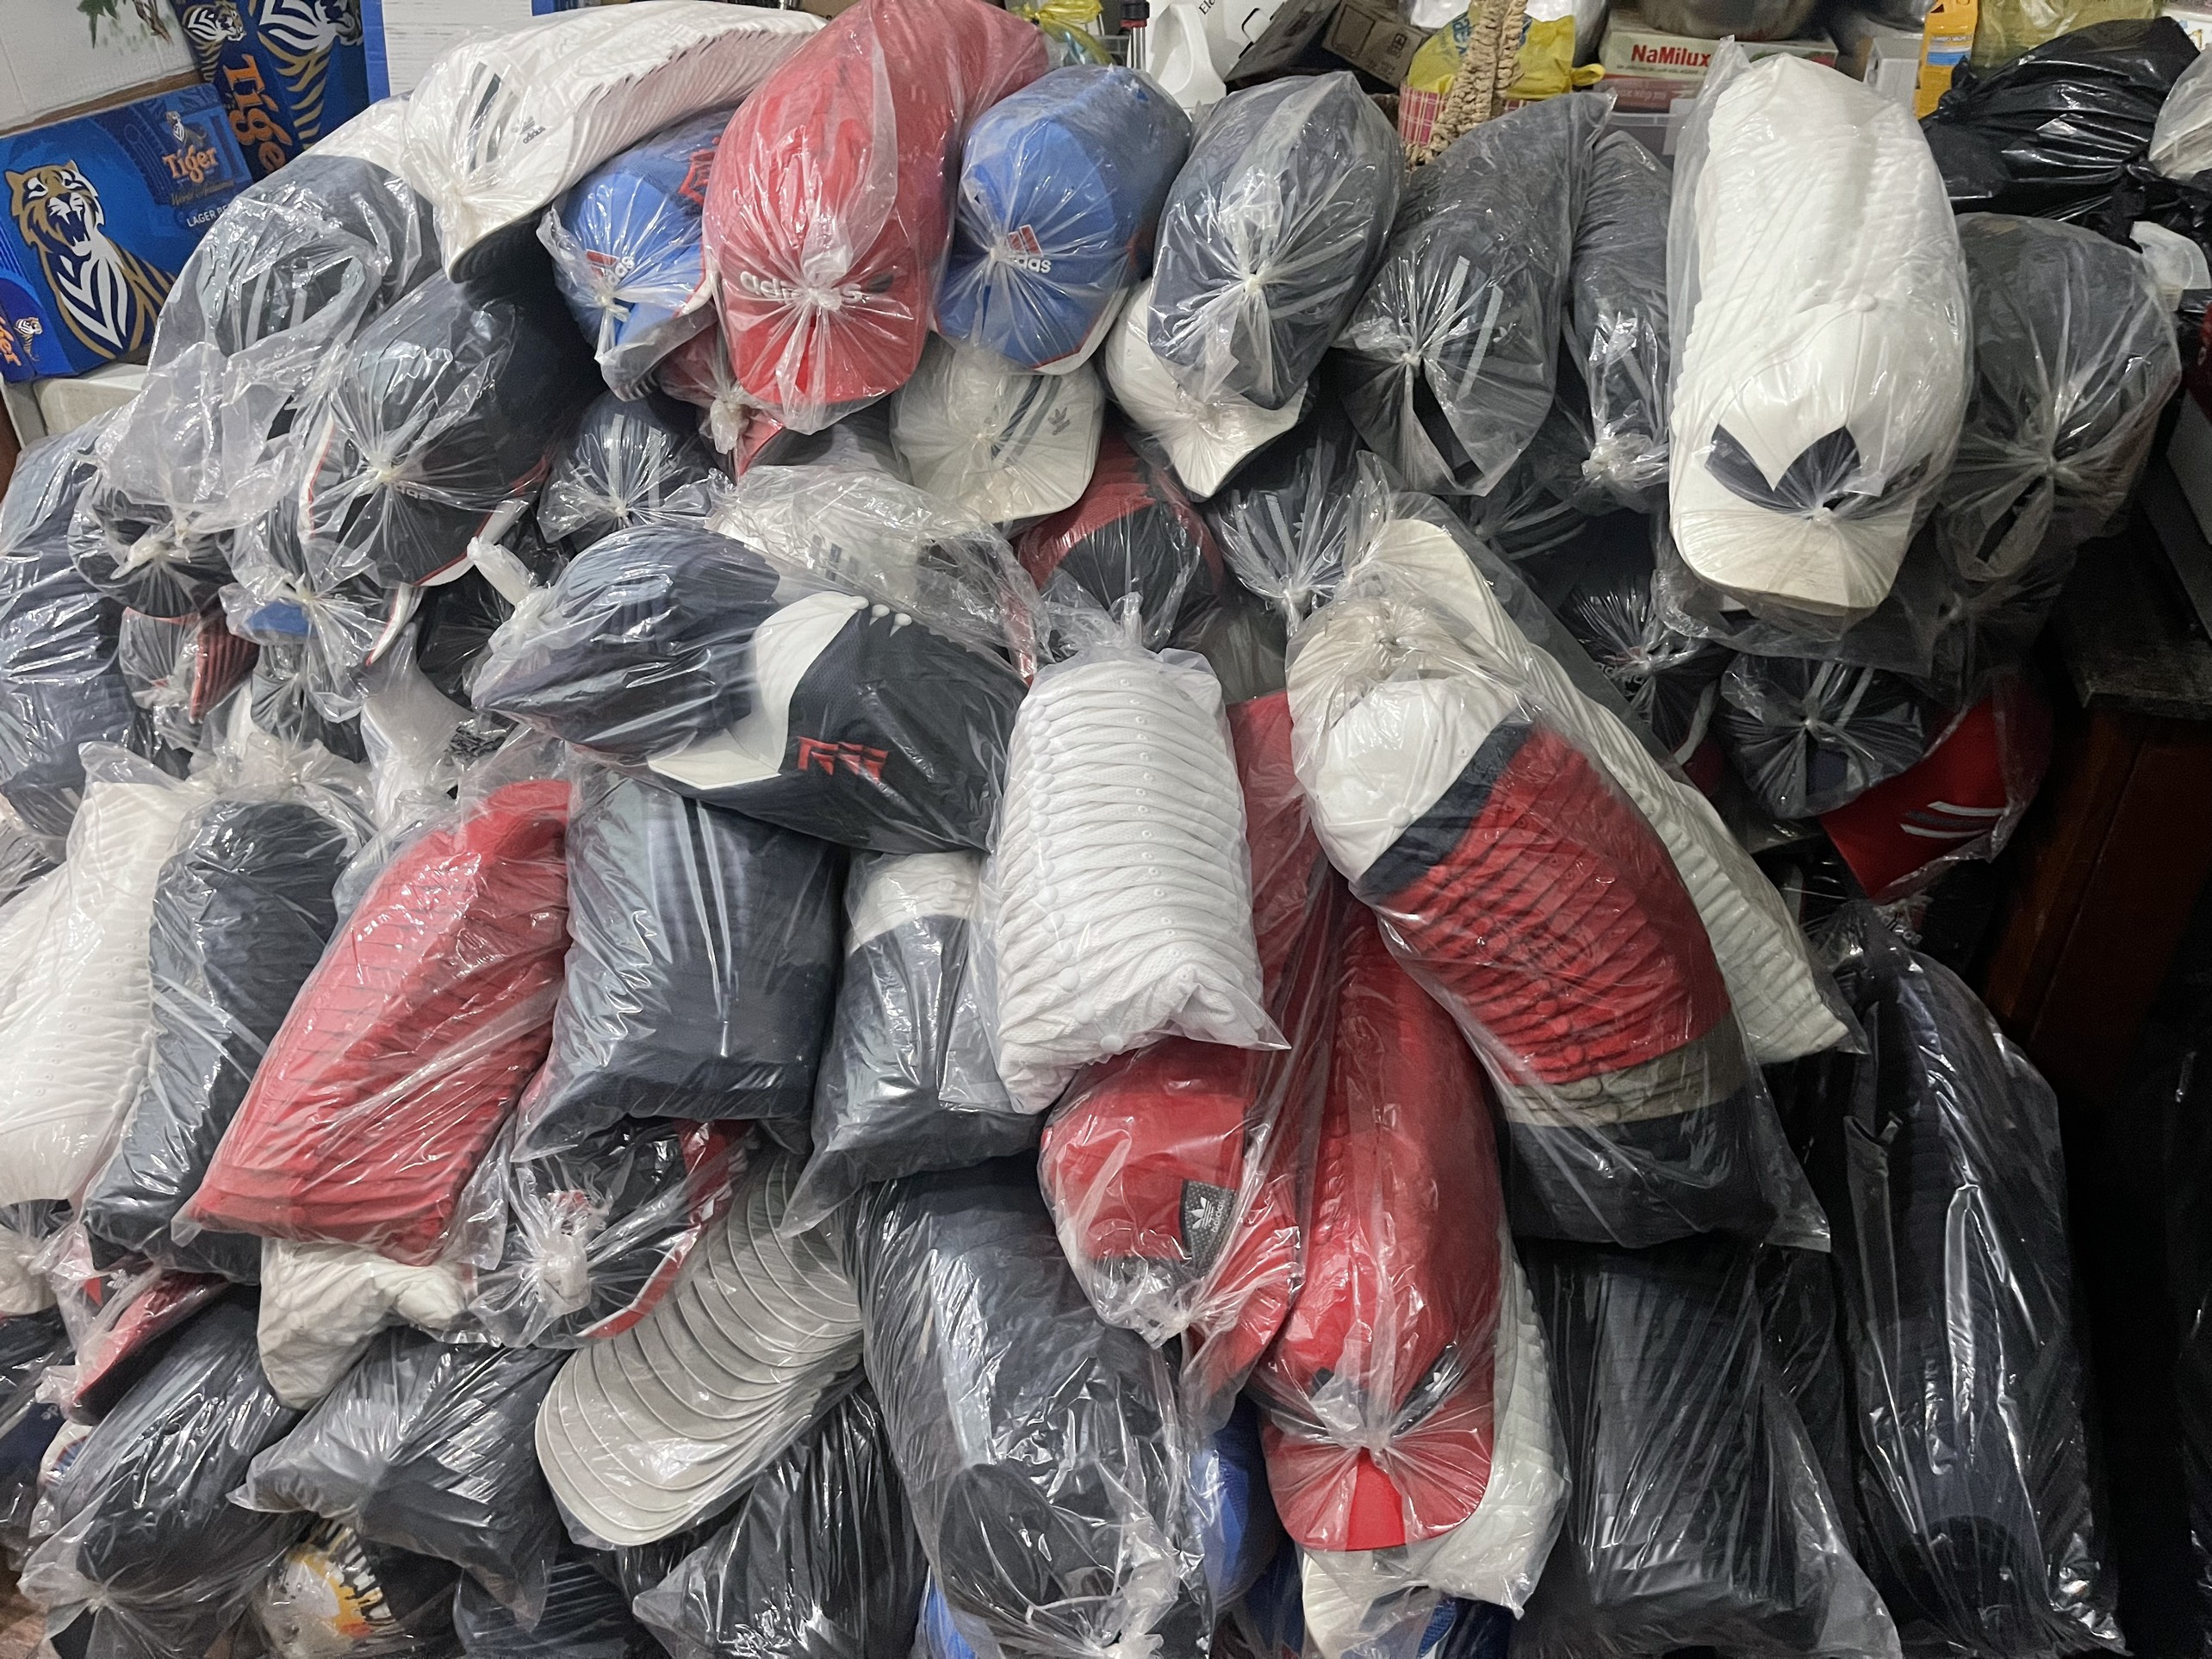 Lực lượng QLTT Bình Dương vừa phát hiện trên 32.000 sản phẩm mũ vải nghi giả mạo nhãn hiệu được bảo hộ độc quyền.